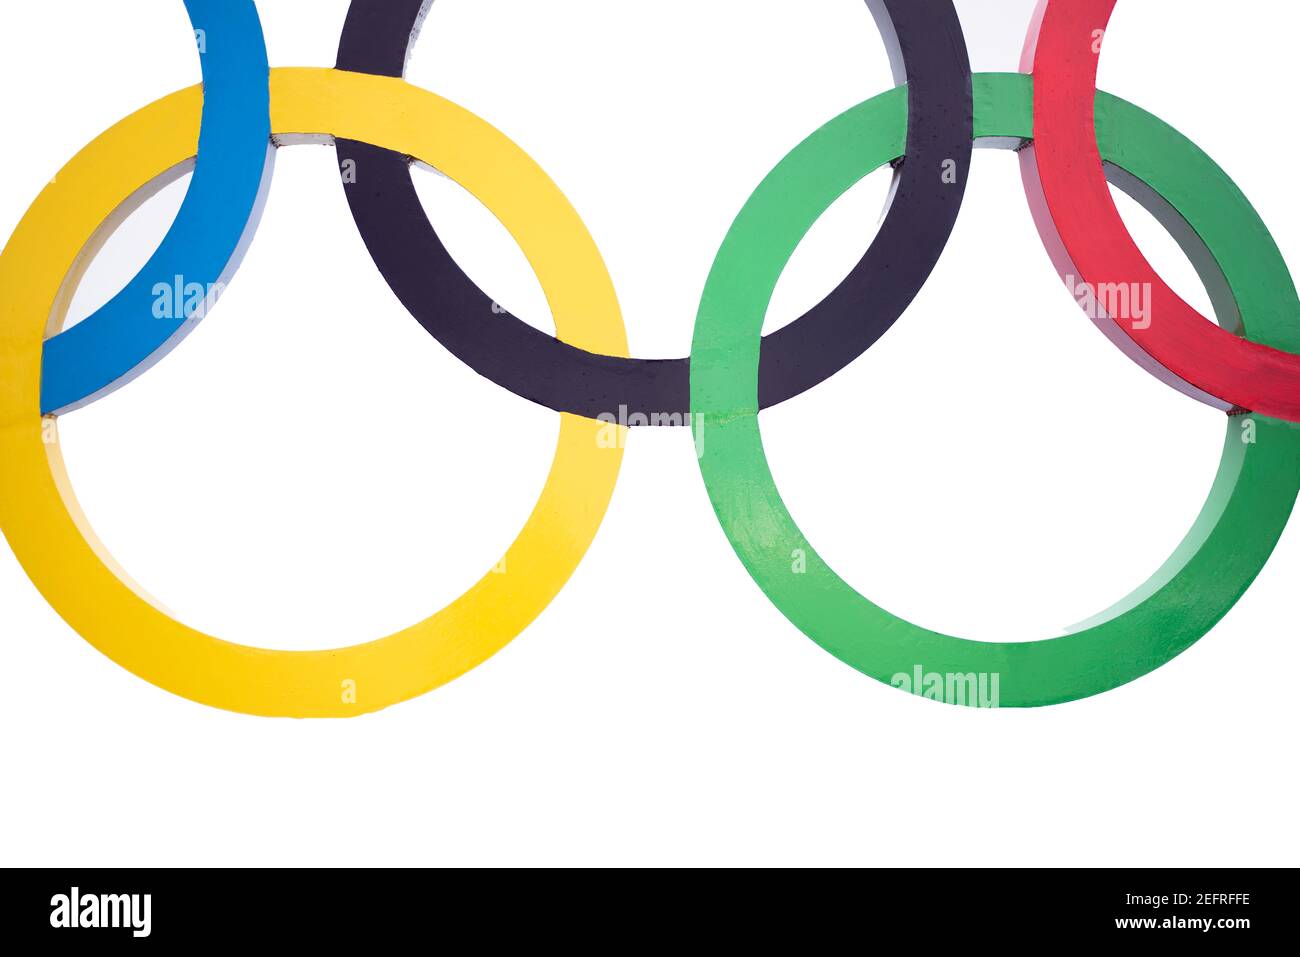 Cinq anneaux entrelacés en bleu, noir, rouge, jaune et vert sur fond blanc Banque D'Images